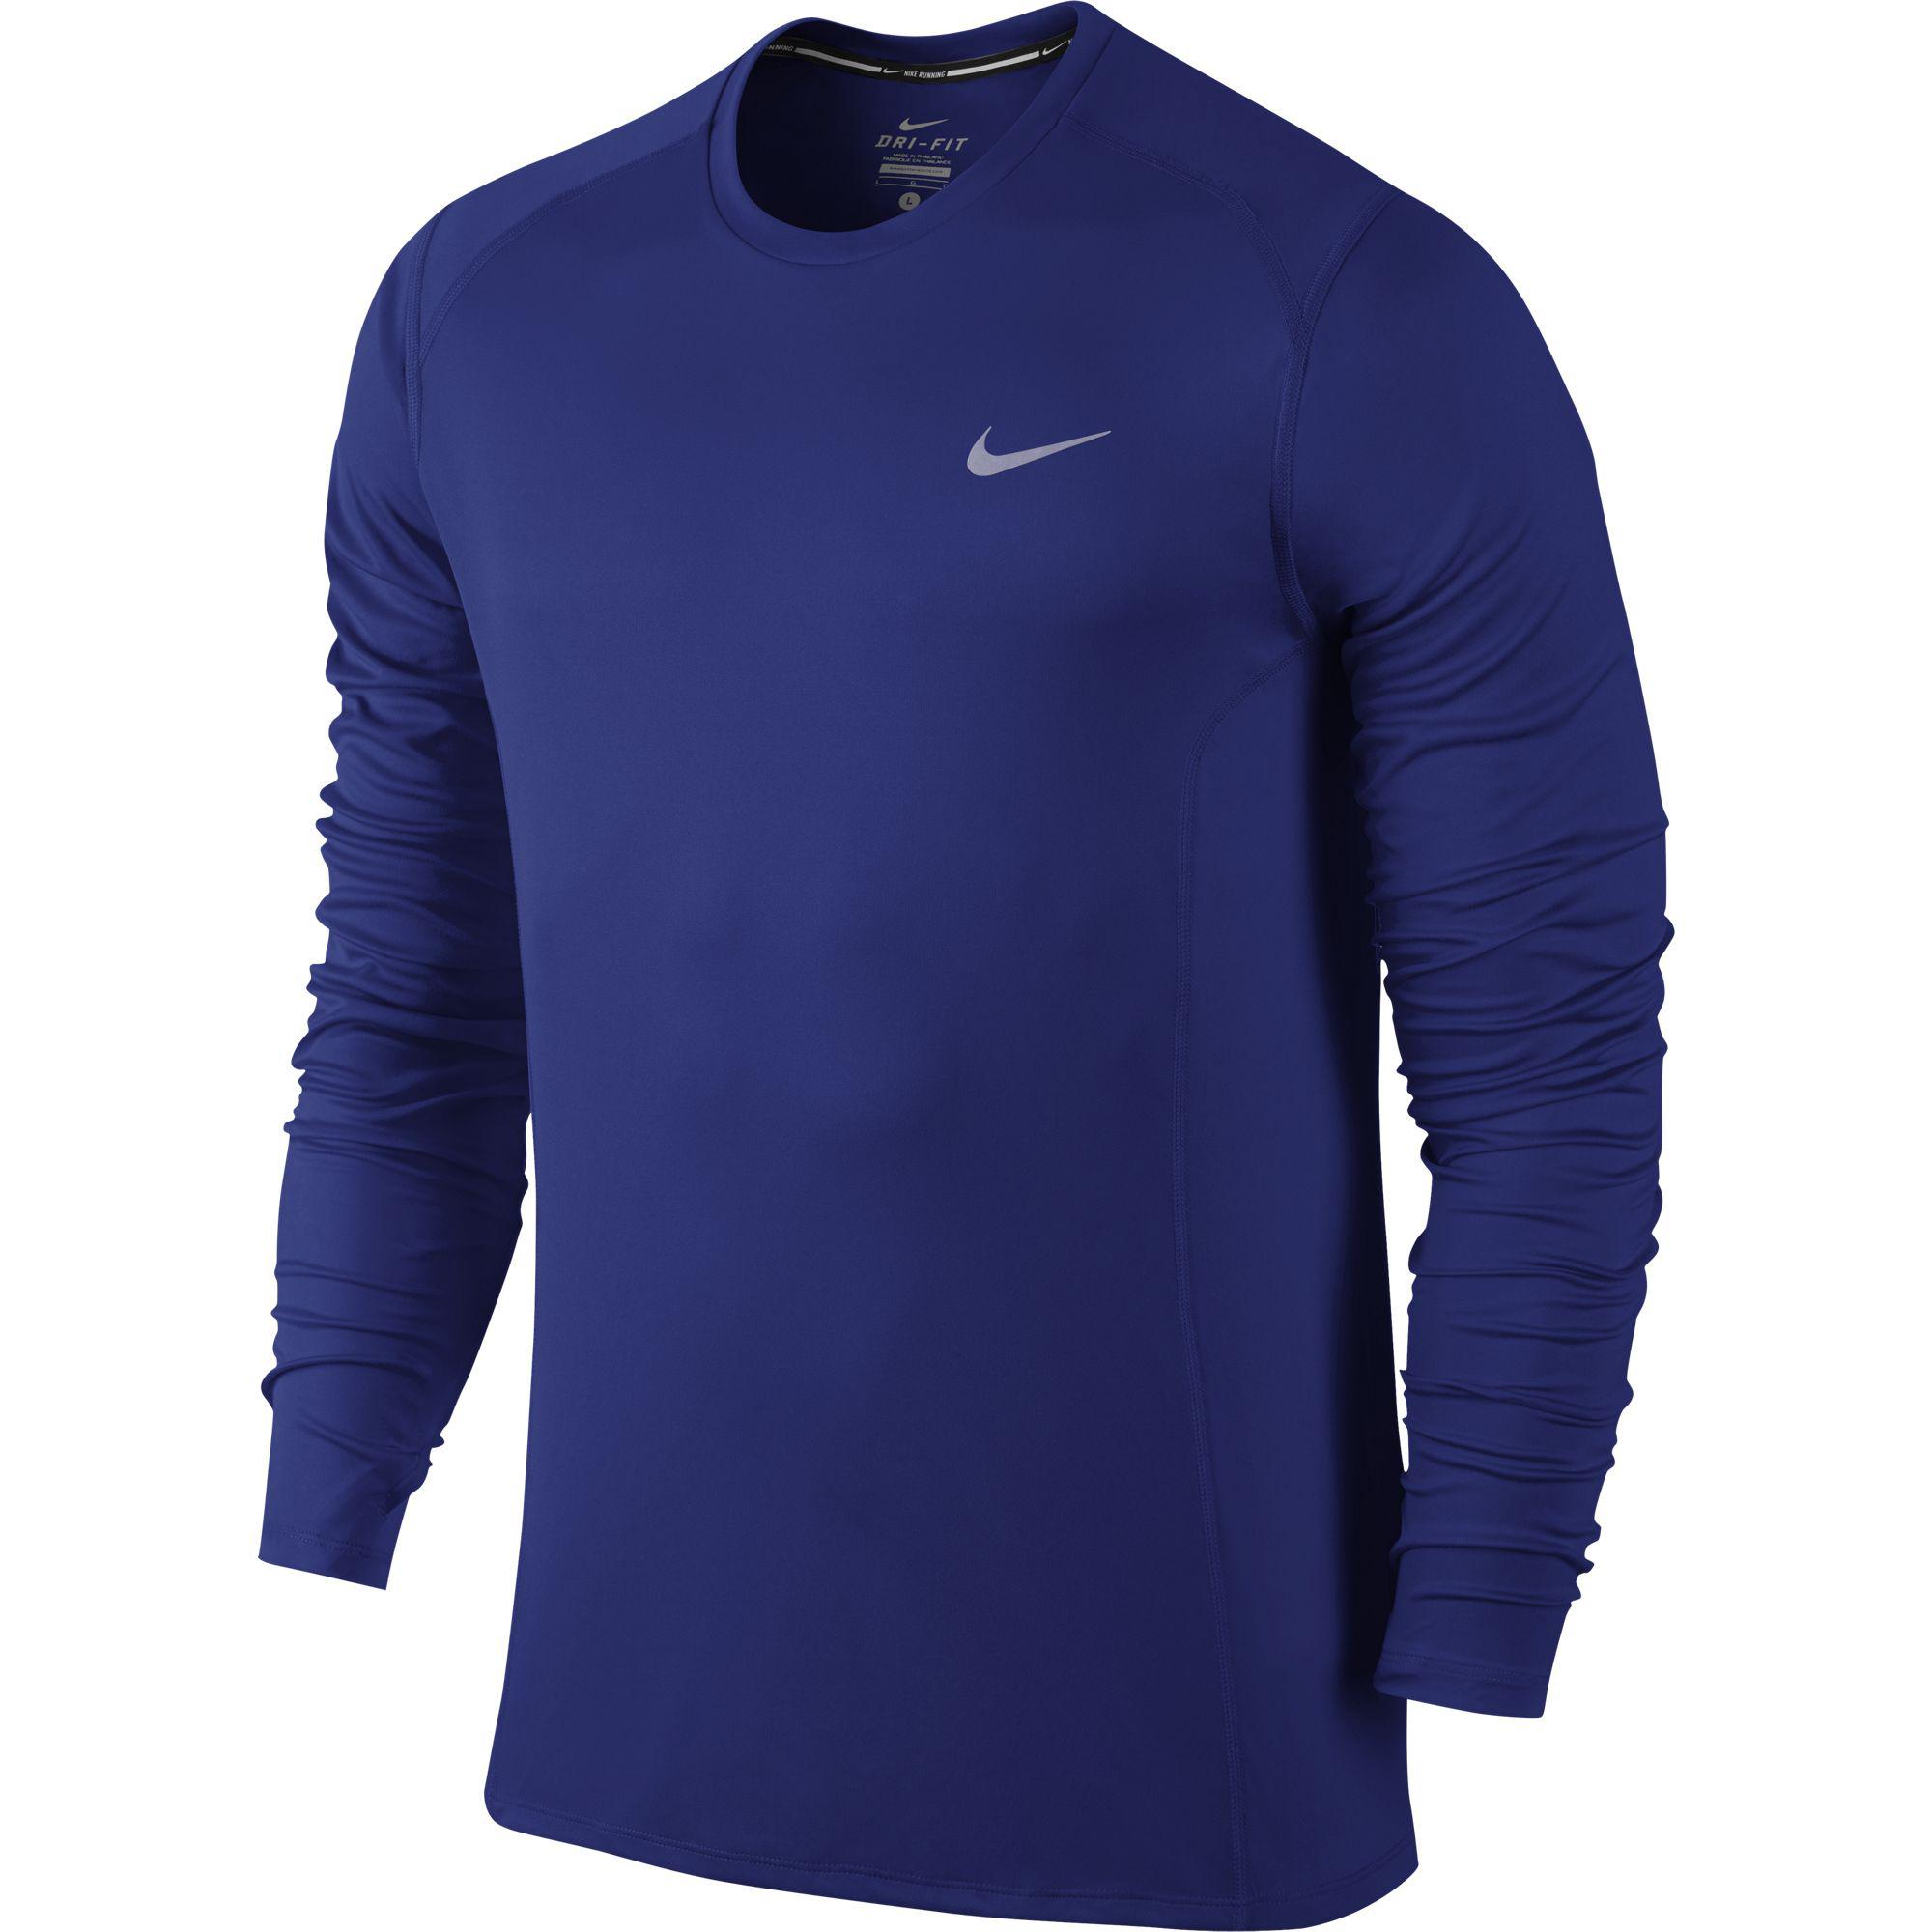 Nike Mens Dri-FIT Miler Long Sleeve Top - Deep Royal Blue - Tennisnuts.com